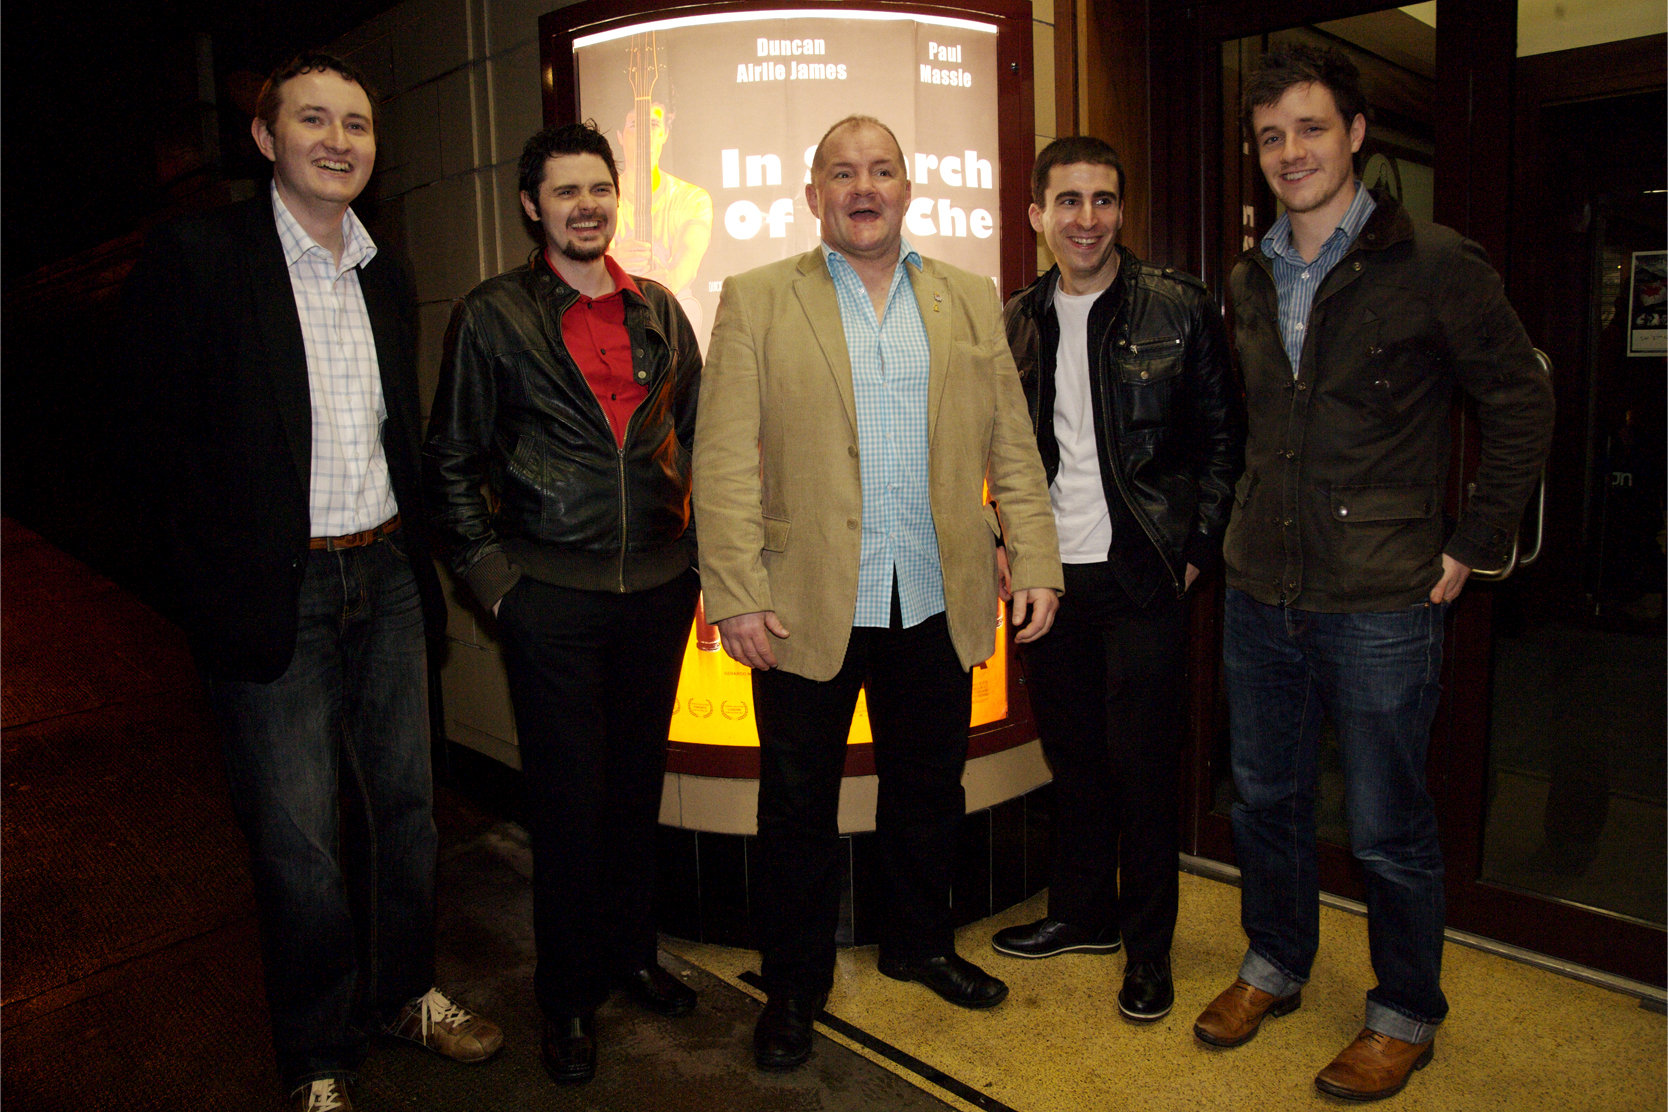 In Search Of La Che Premiere at the Glasgow Film Theatre (L-R) Chris Quick, Andy S. McEwan, Duncan Airlie James, Mark D. Ferguson & Paul Massie